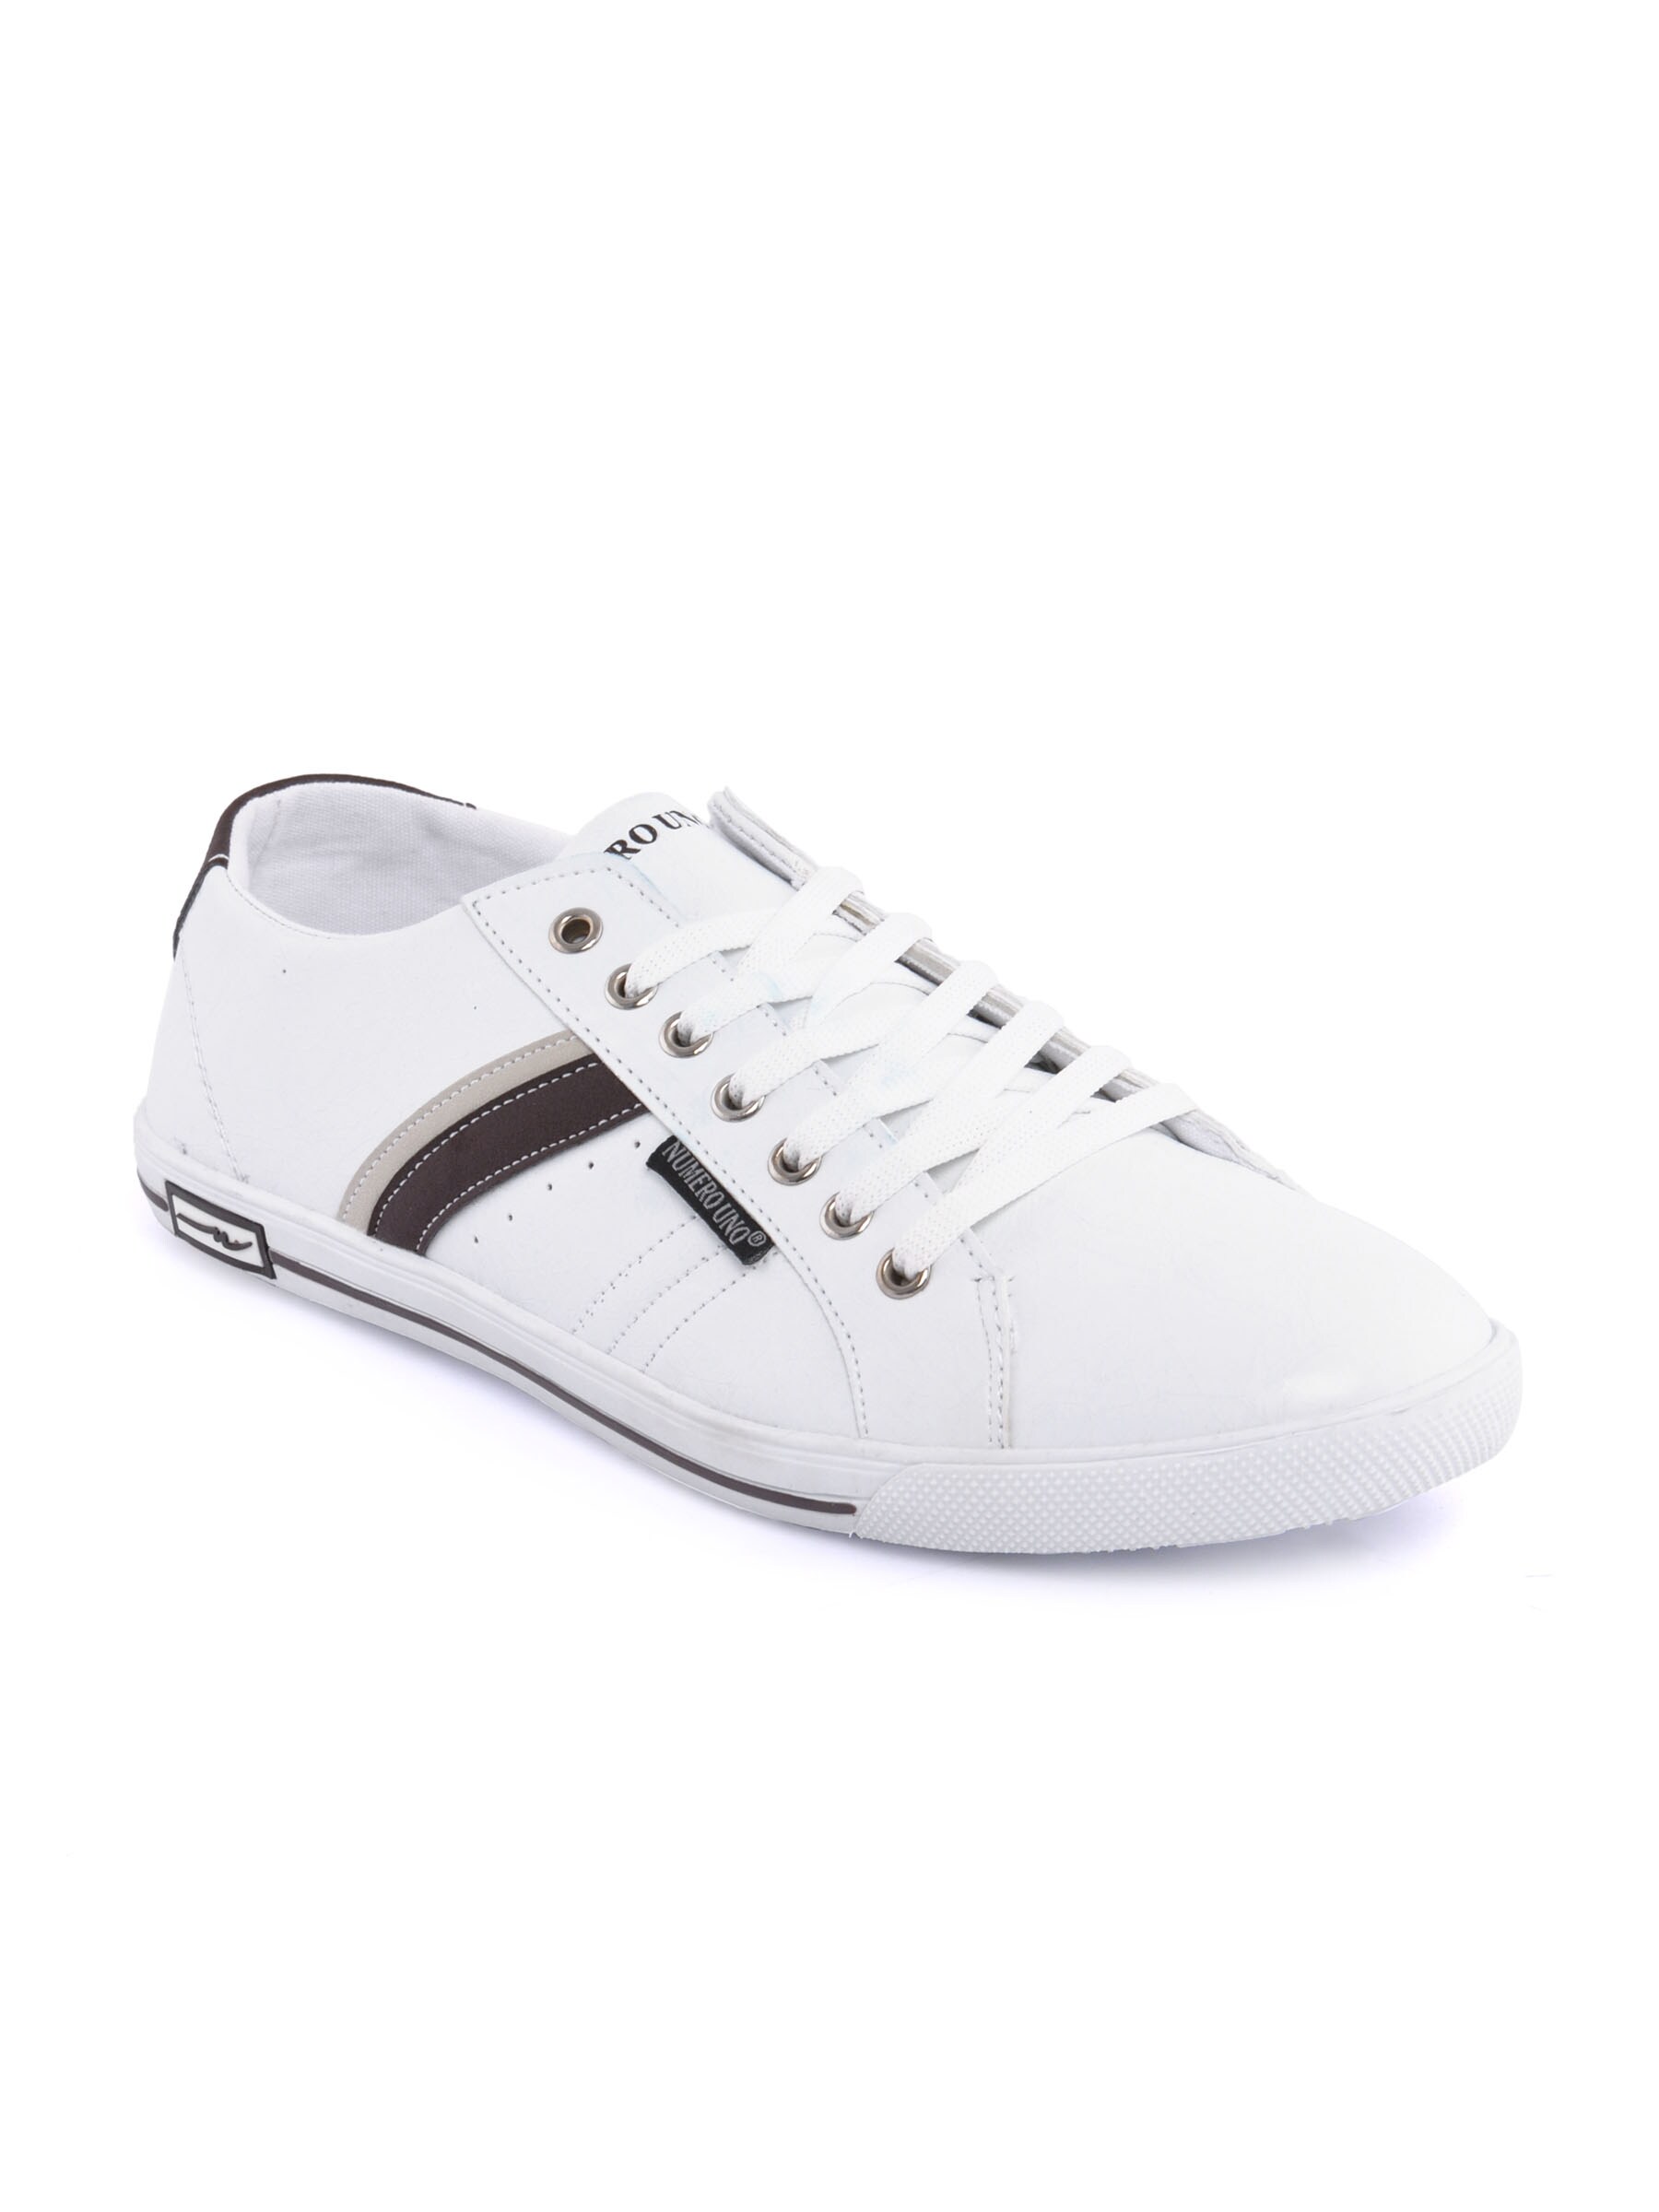 Numero Uno Men Casual White Shoes